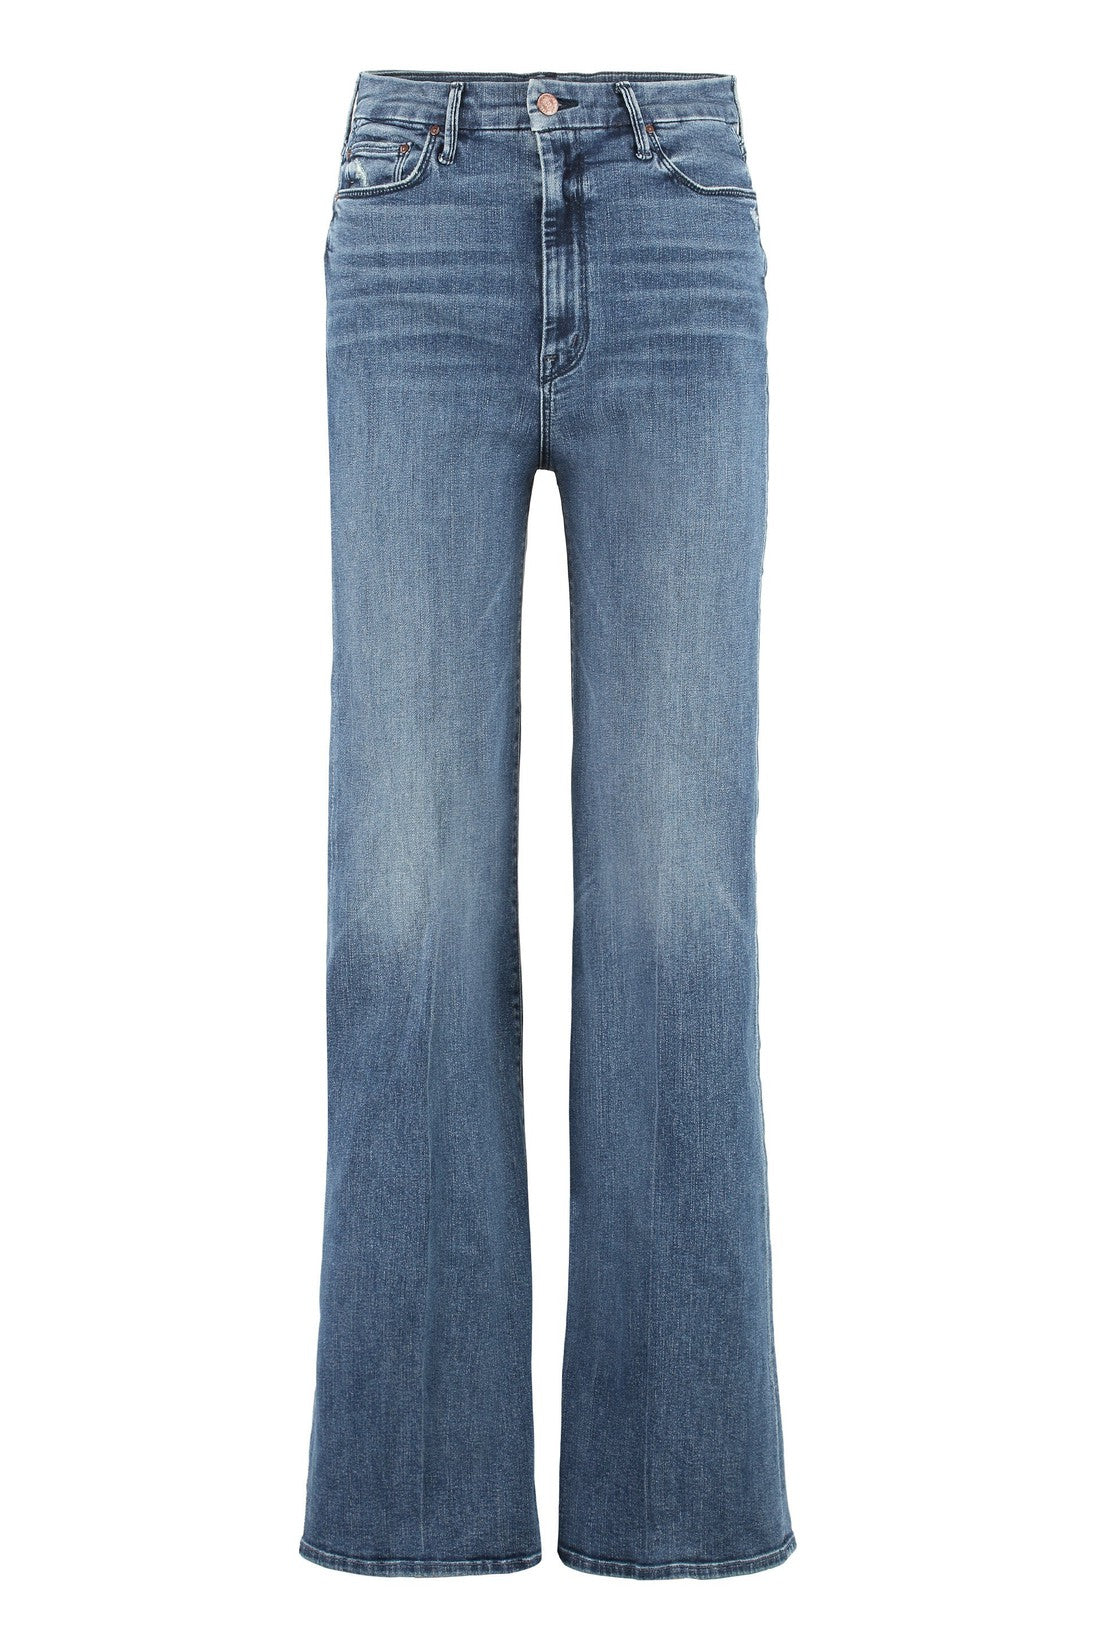 Mother-OUTLET-SALE-Roller Skimp wide-leg jeans-ARCHIVIST